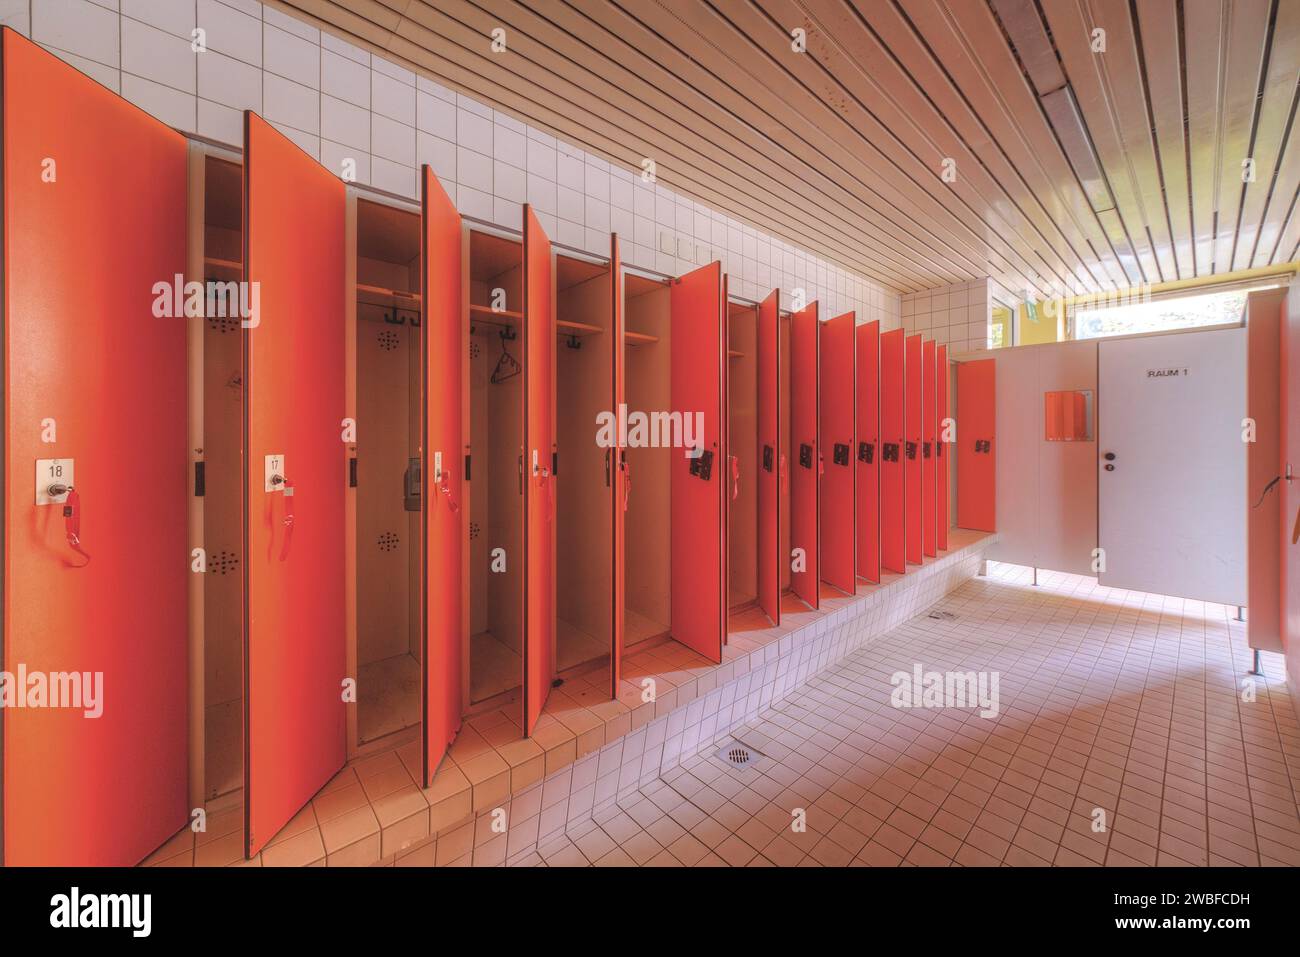 Un ensemble de vestiaires rouges dans une pièce propre et vide, Bad Am Park, Lost place, Essen, Rhénanie du Nord-Westphalie, Allemagne Banque D'Images